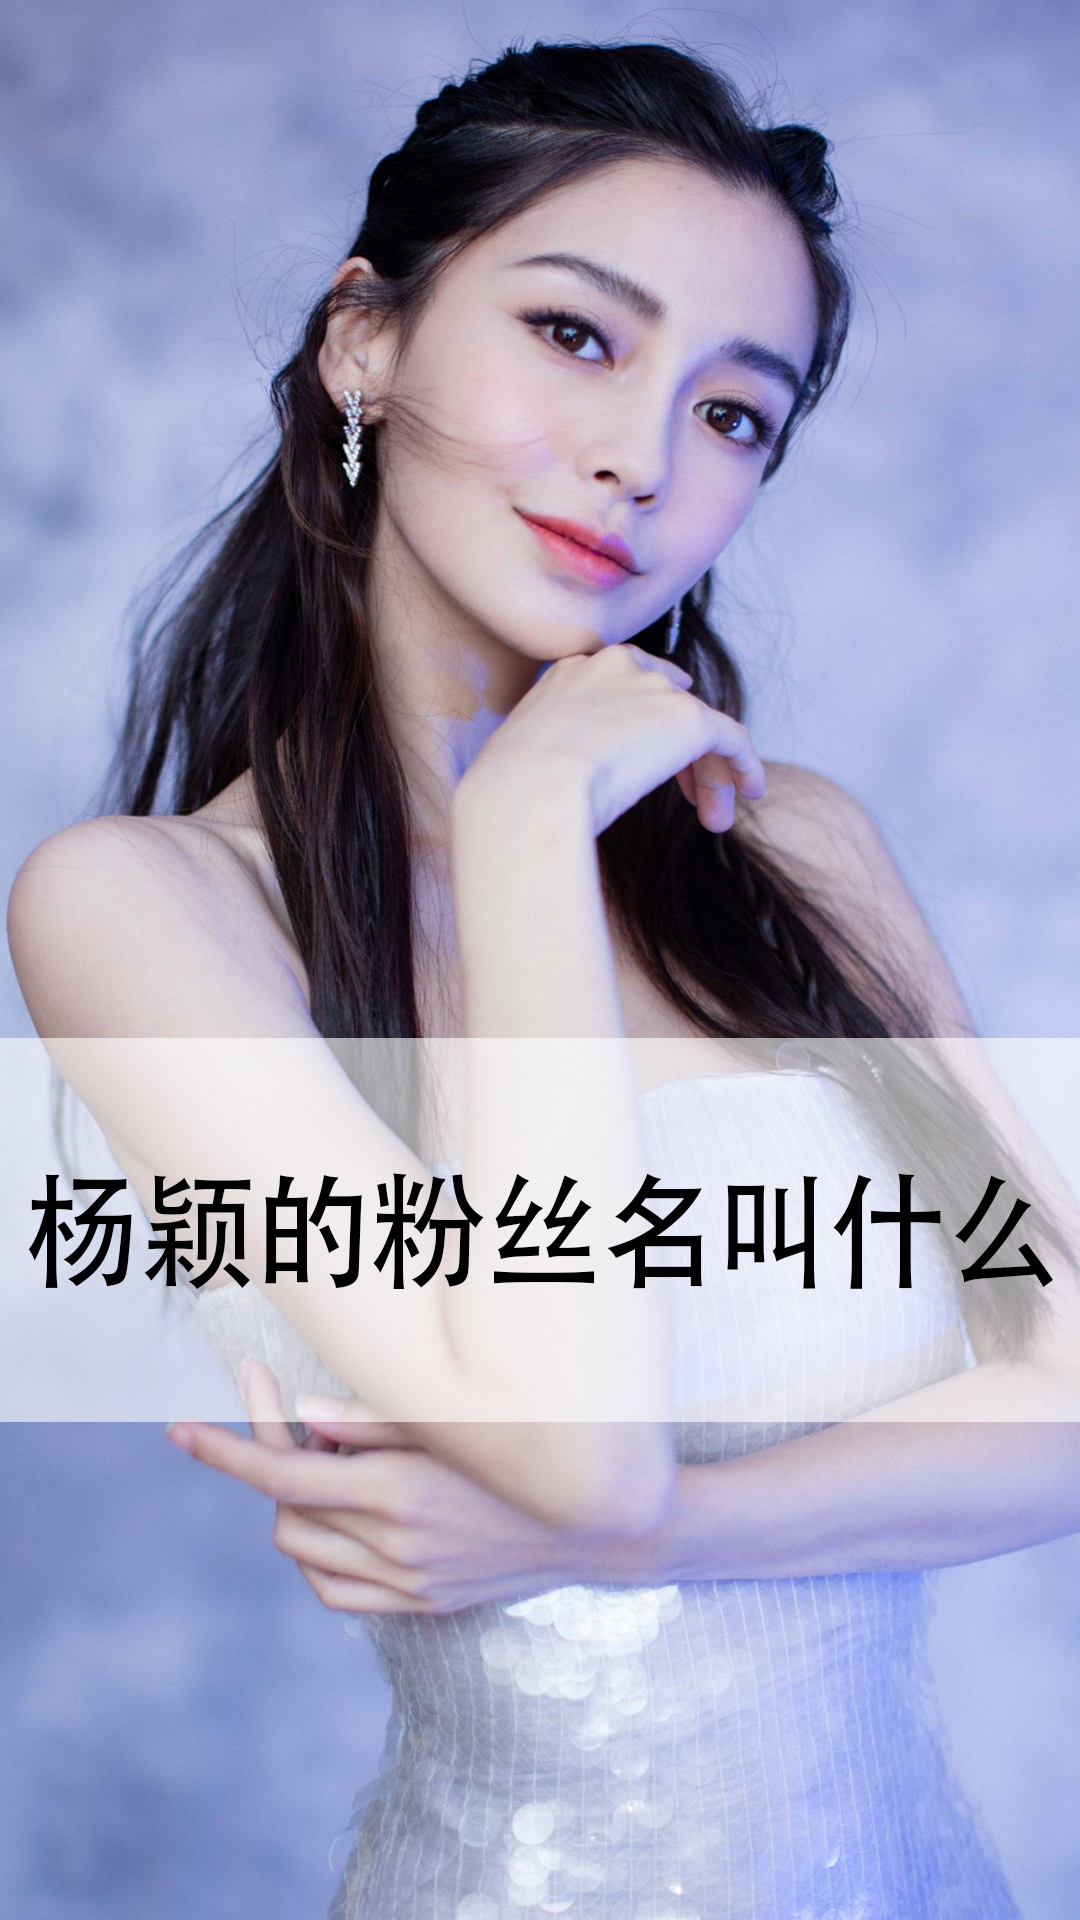 杨颖粉丝名网名图片